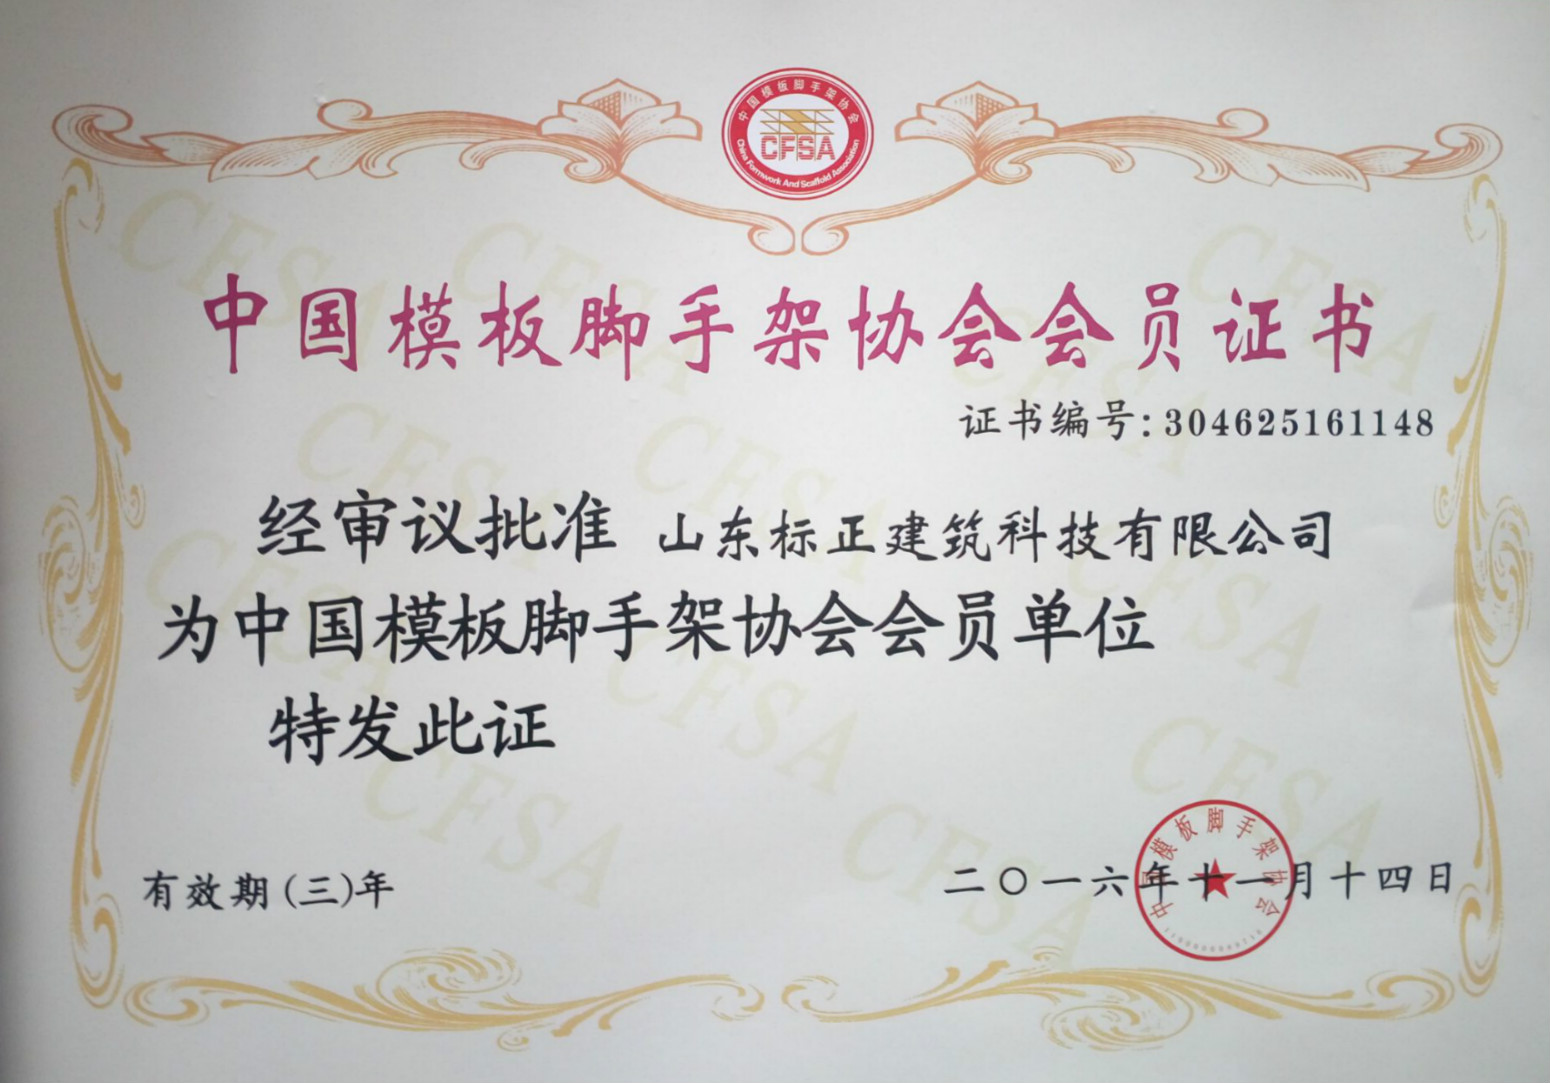 中国模板脚手架协会会员证书